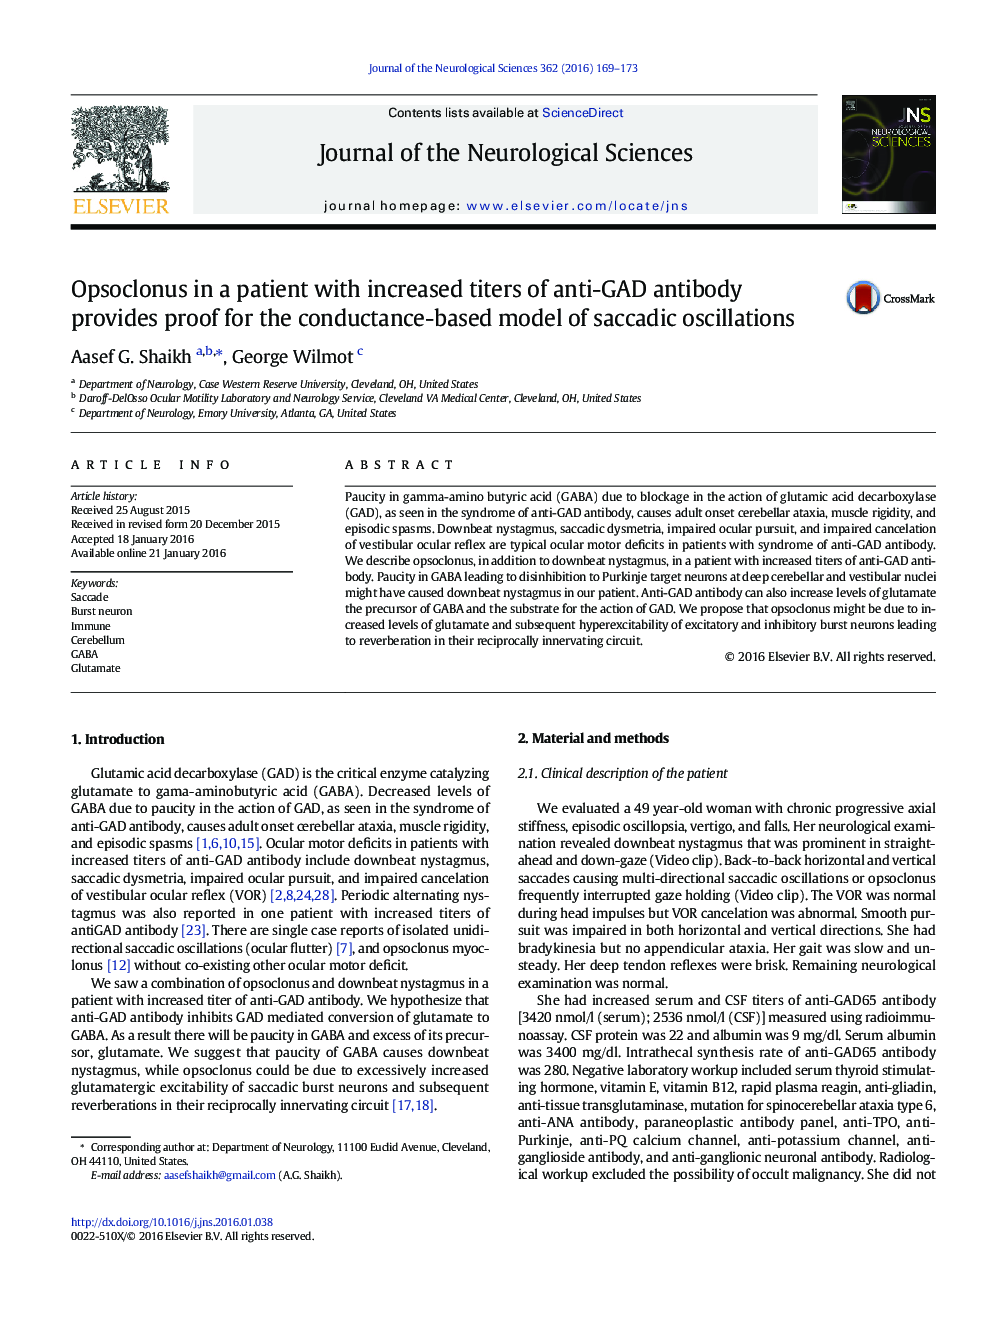 Opsoclonus در بیمار با تیترهای افزایشی آنتی بادی ضد GAD ، اثبات مدل مبتنی بر هدایت نوسانات ساکاد فراهم می کند